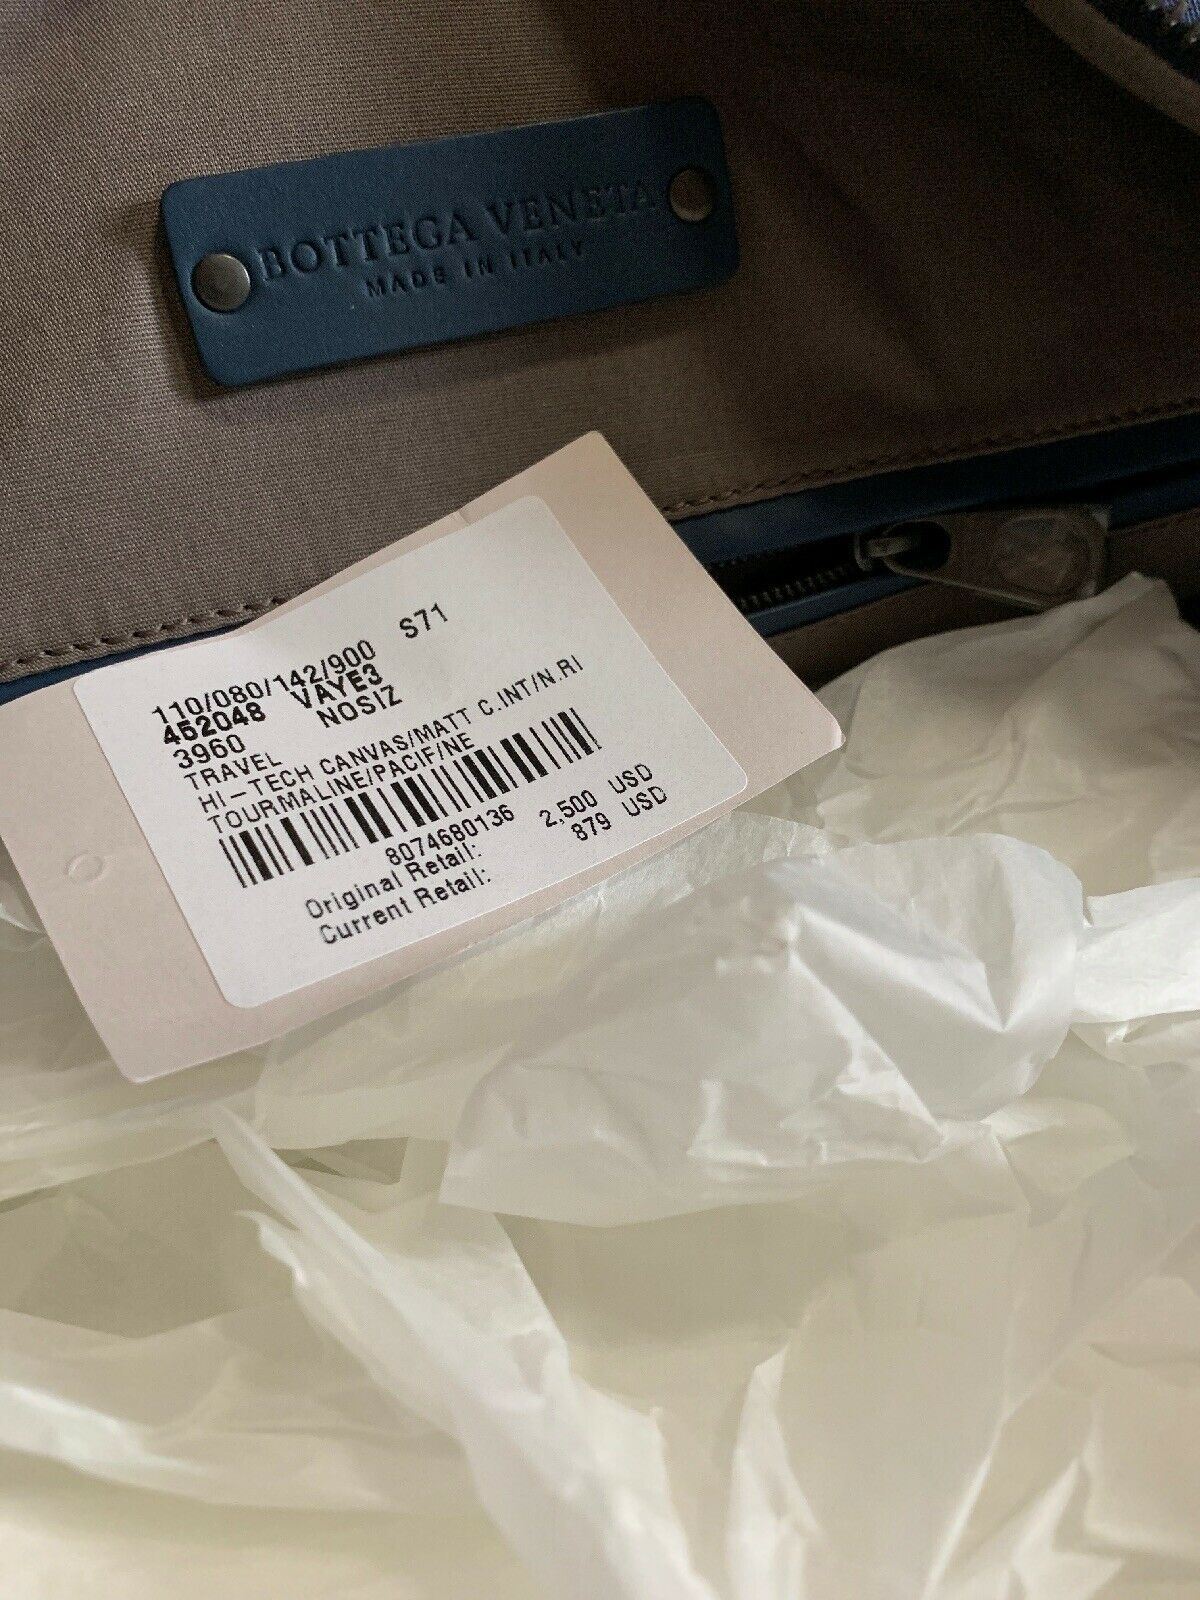 Новая дорожная сумка Bottega Veneta из кожи и холста за 2500 долларов DK Blue 422048 Италия